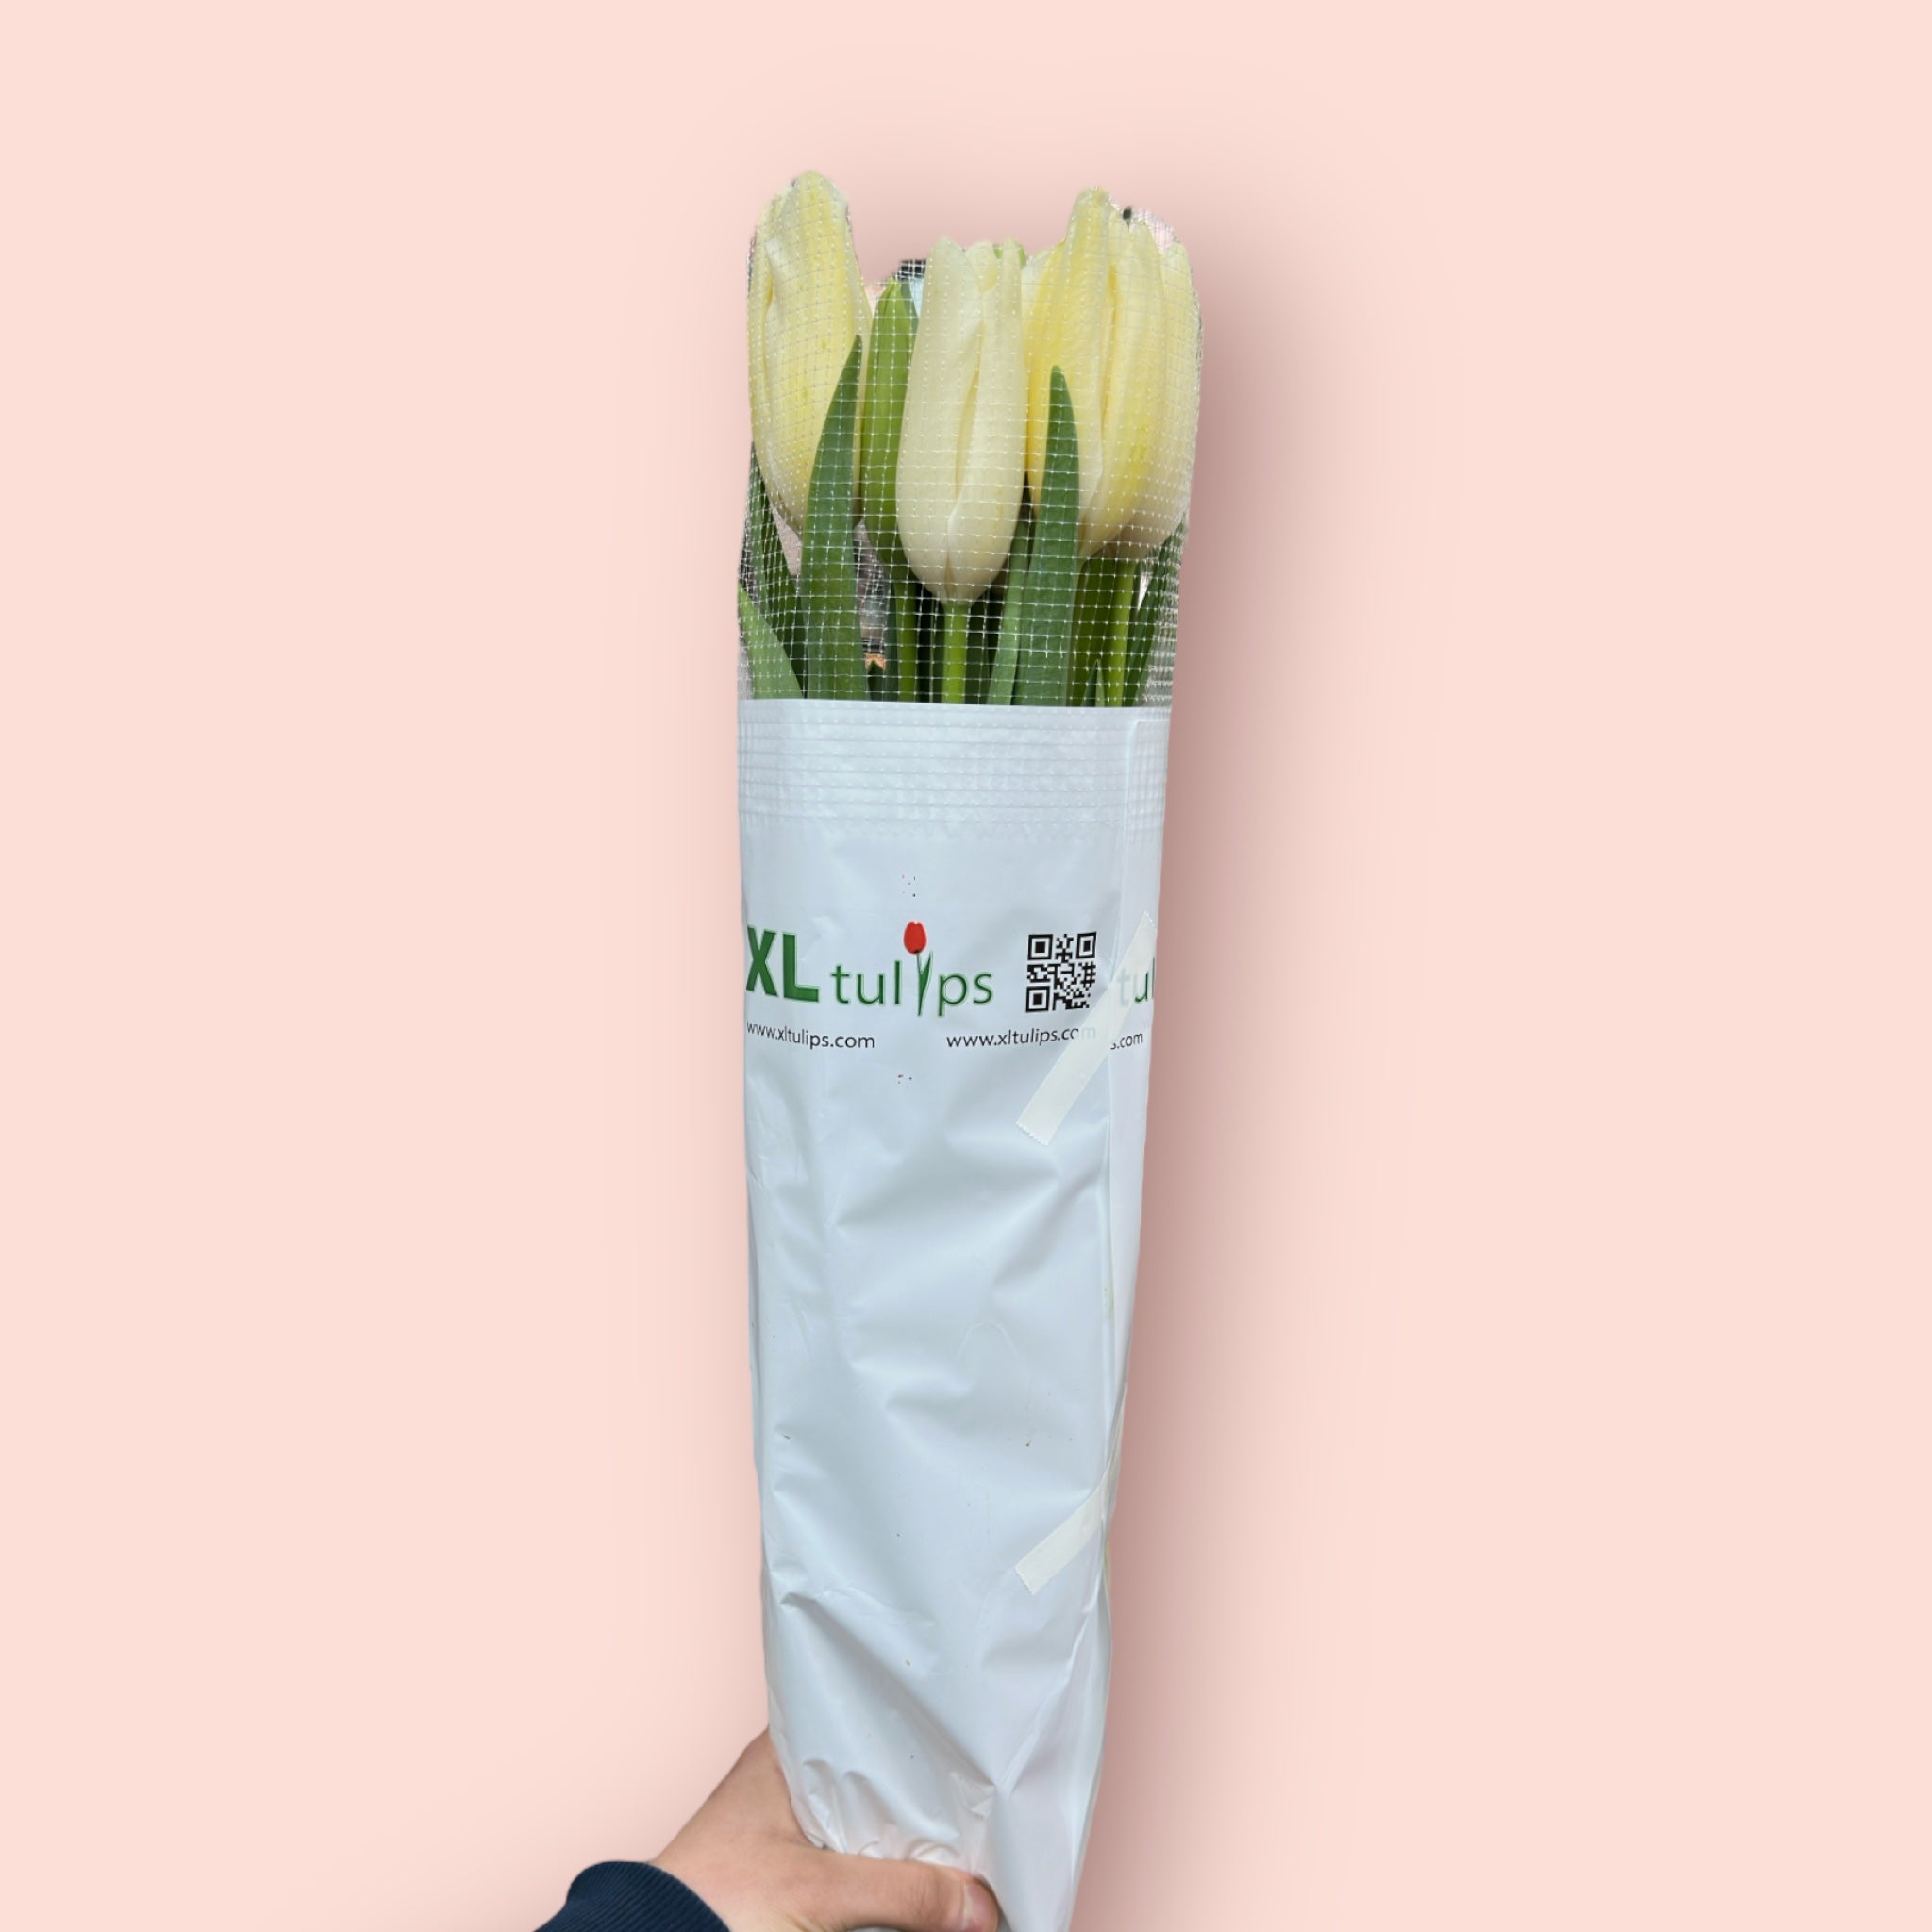 Französische Tulpen XL 65cm